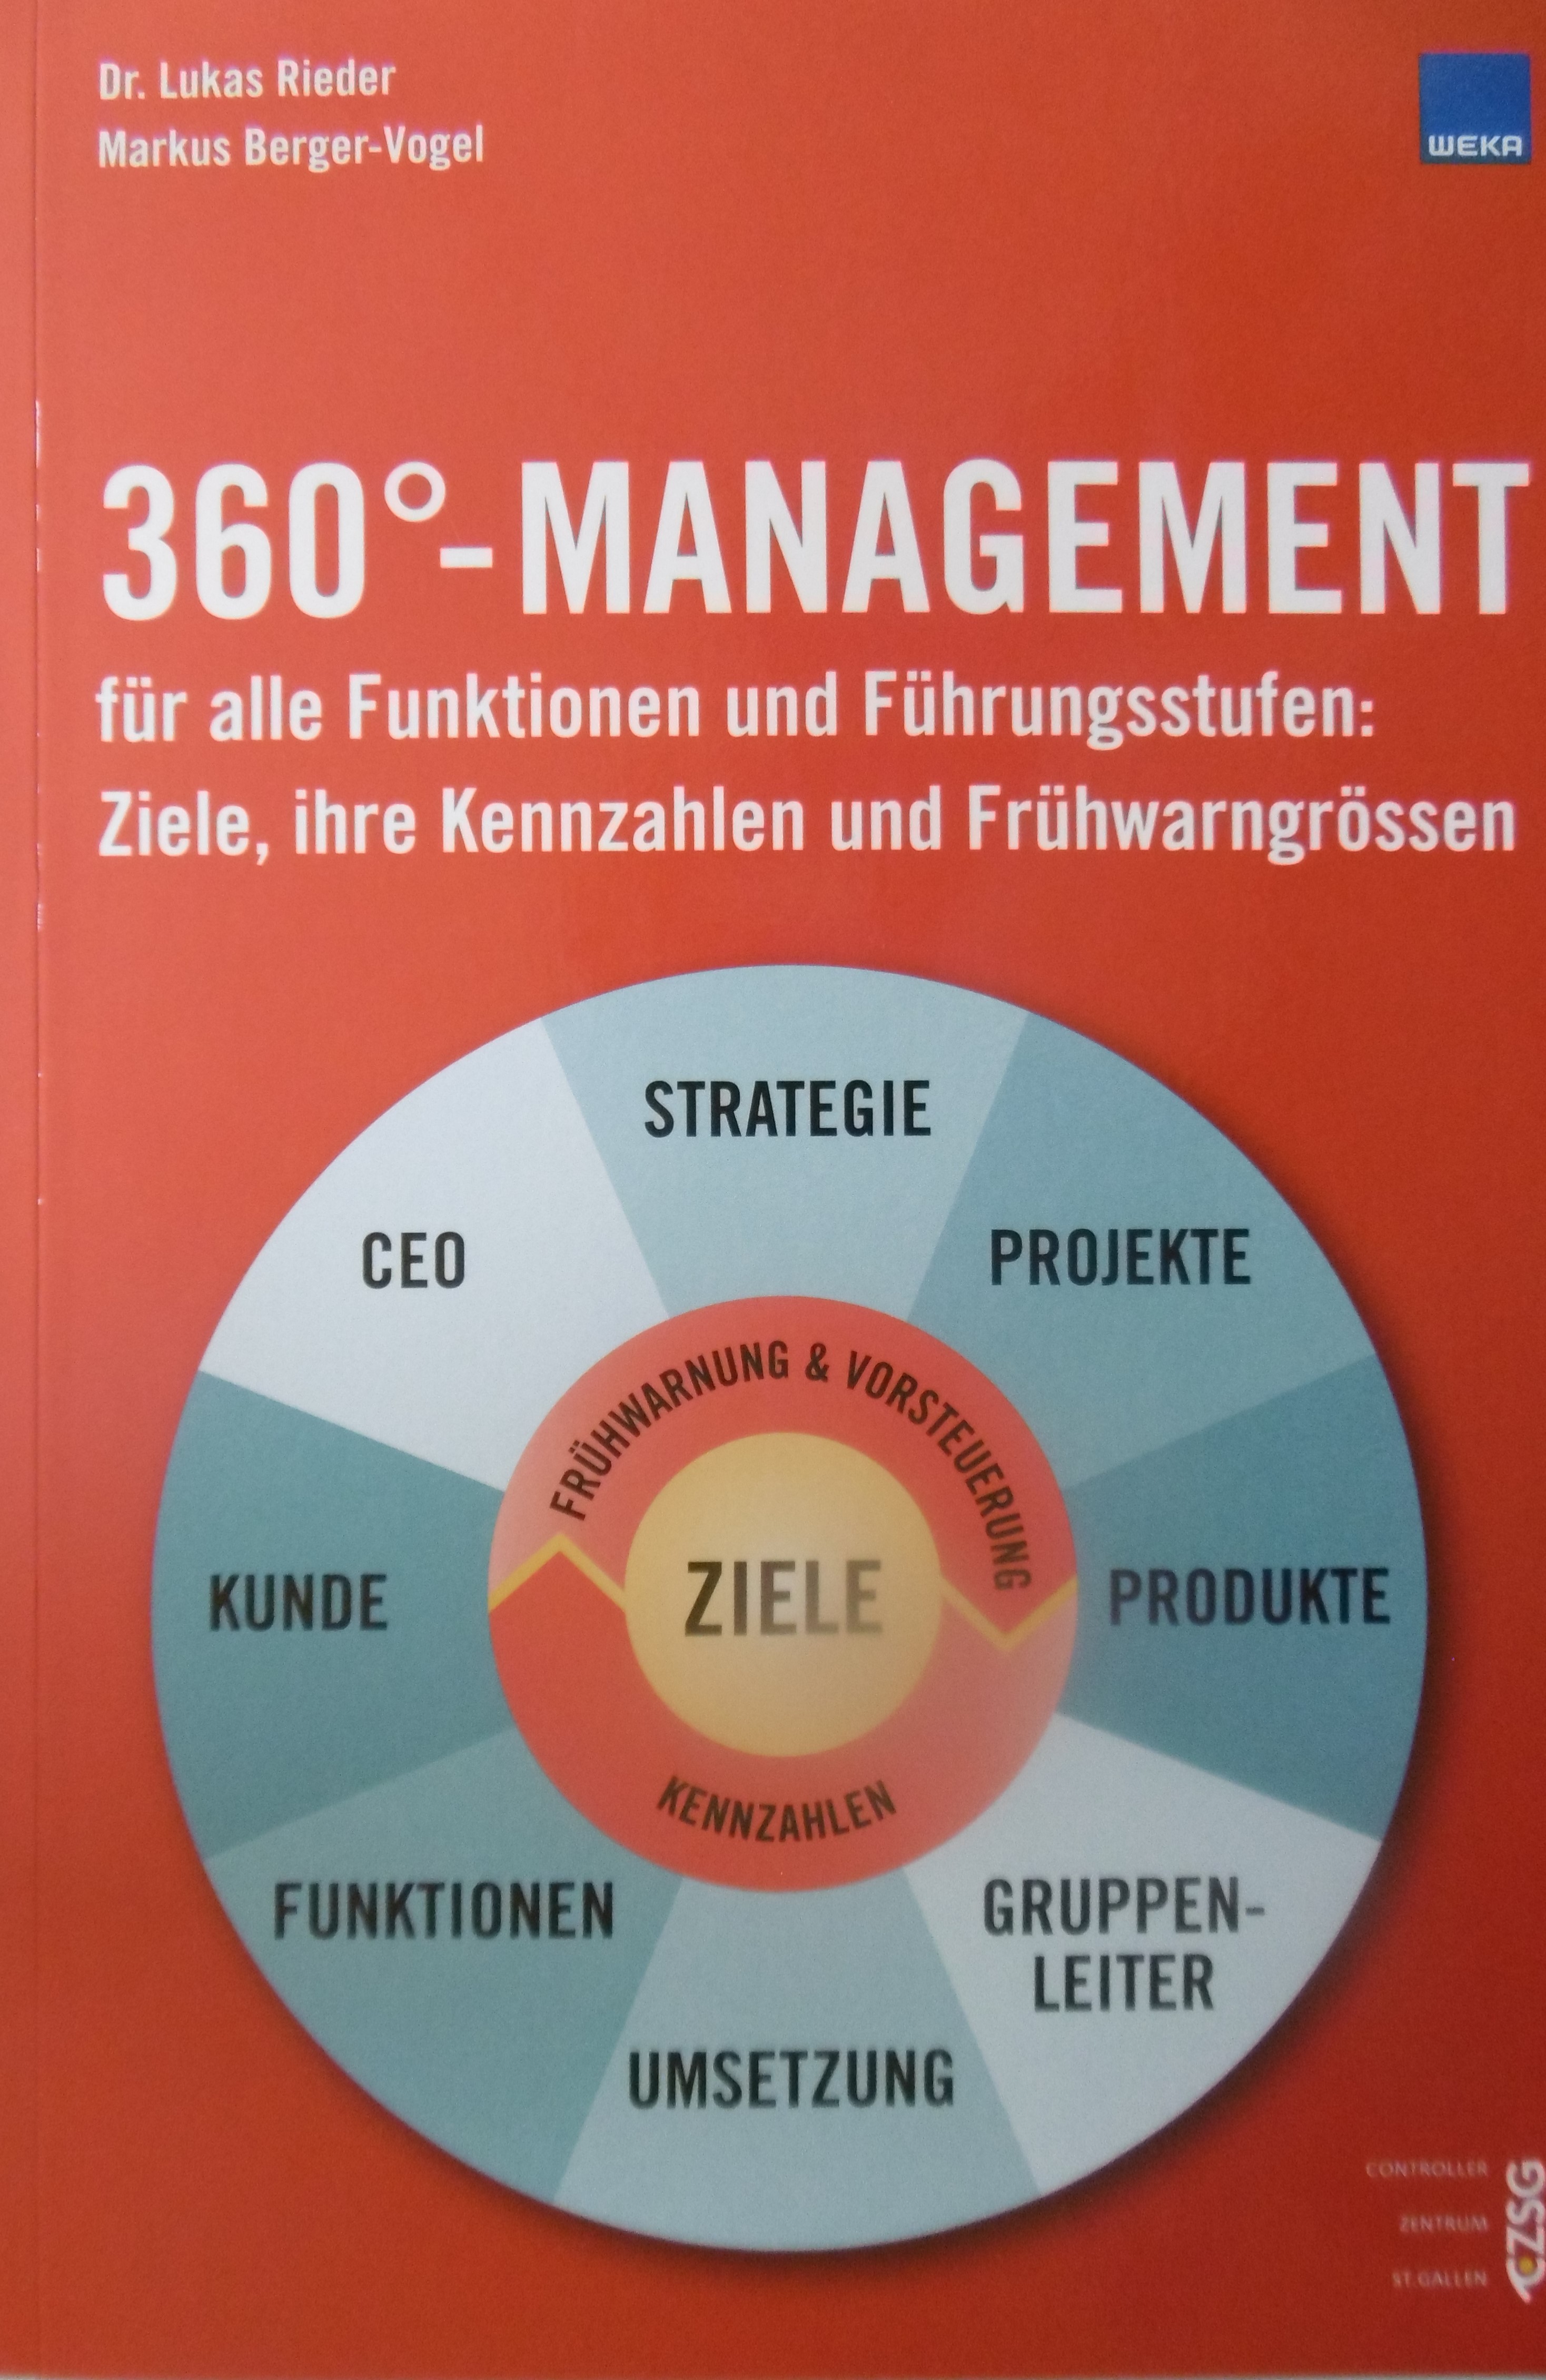 360°-Management für alle Funktionen und Führungsstufen (Buch, kartoniert)